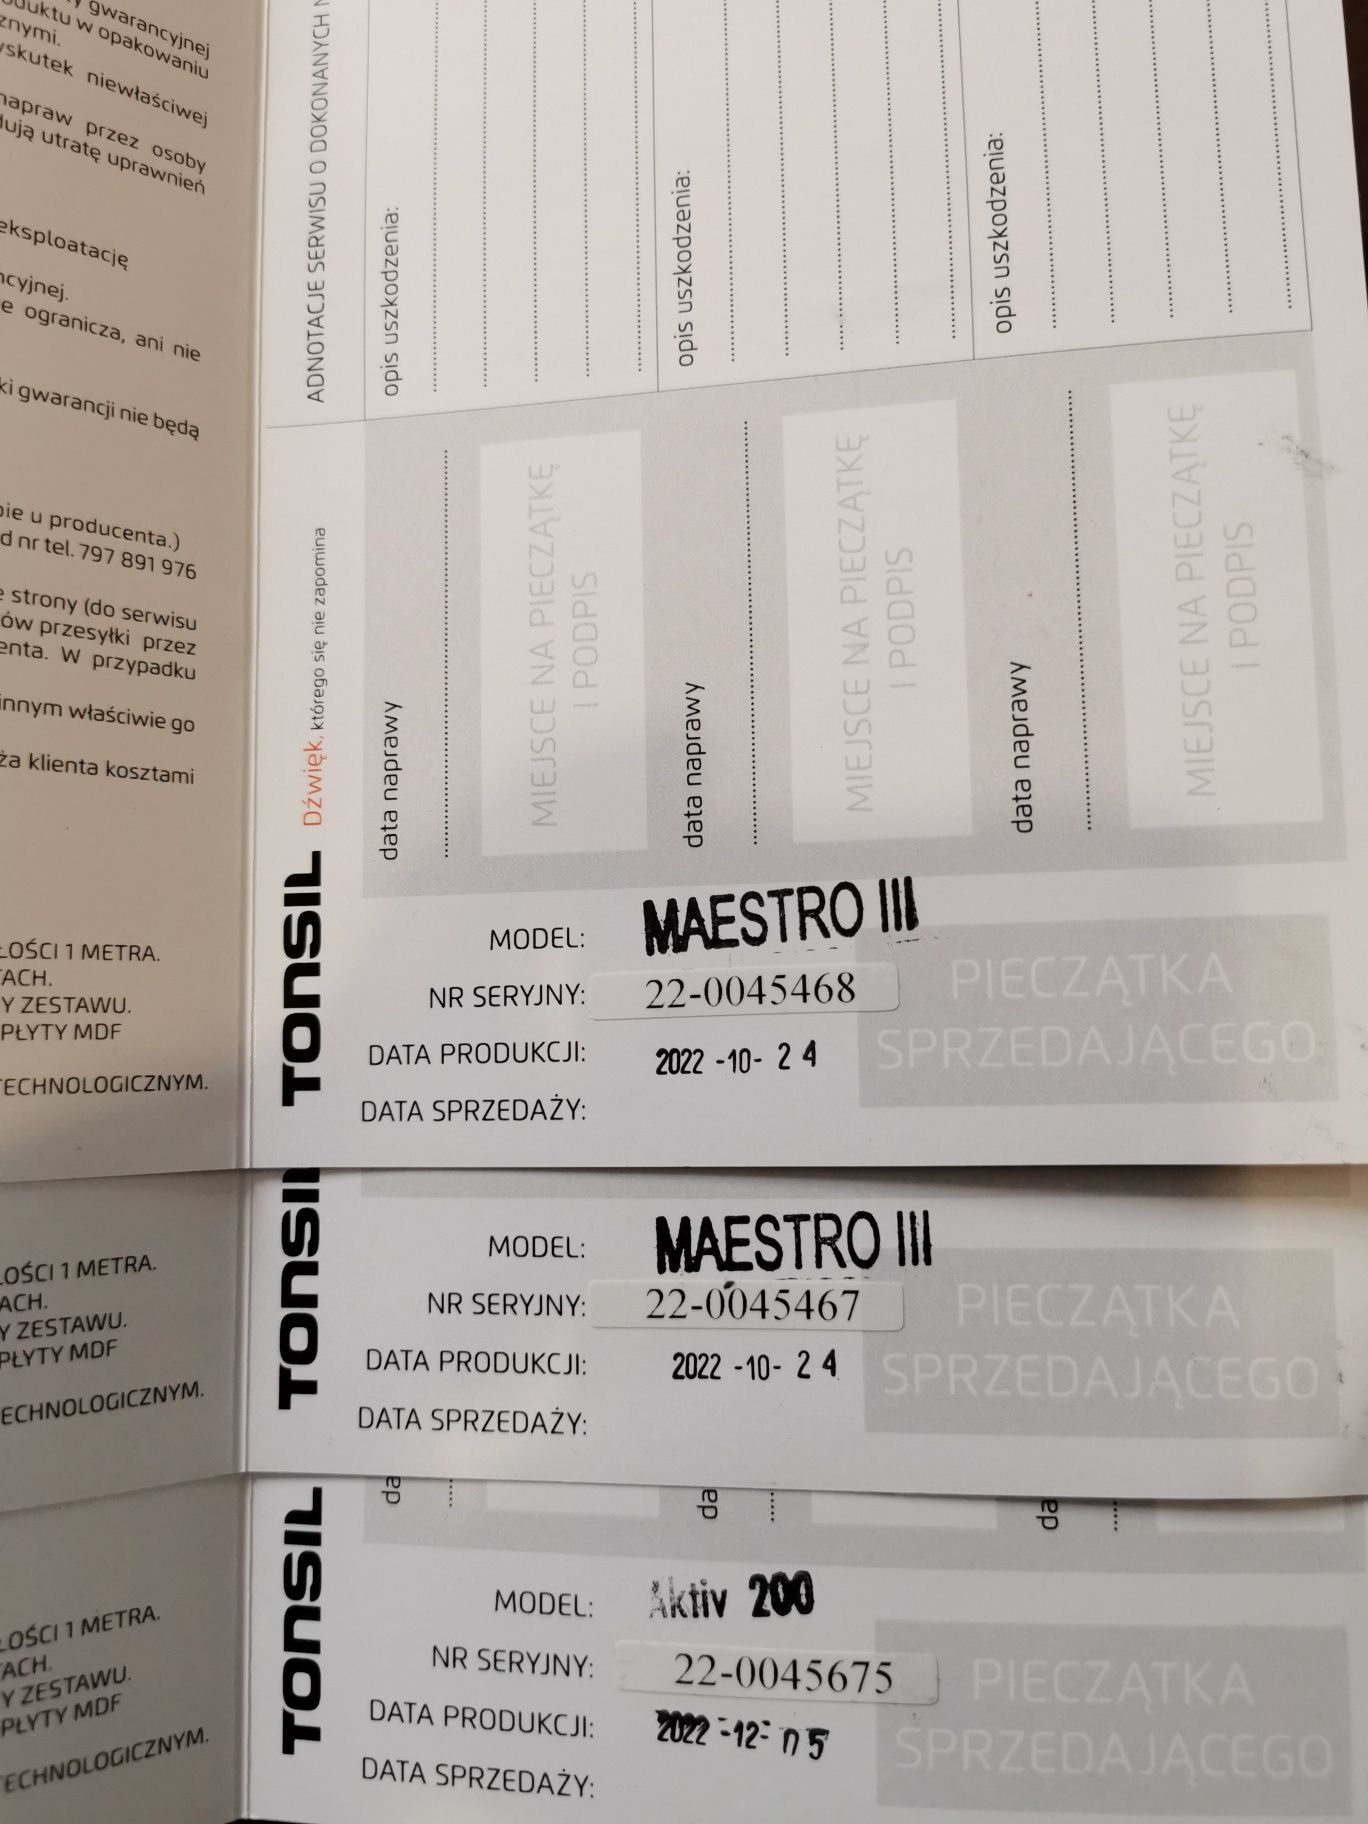 Tonsil Maestro III + Tonsil Aktiv 200